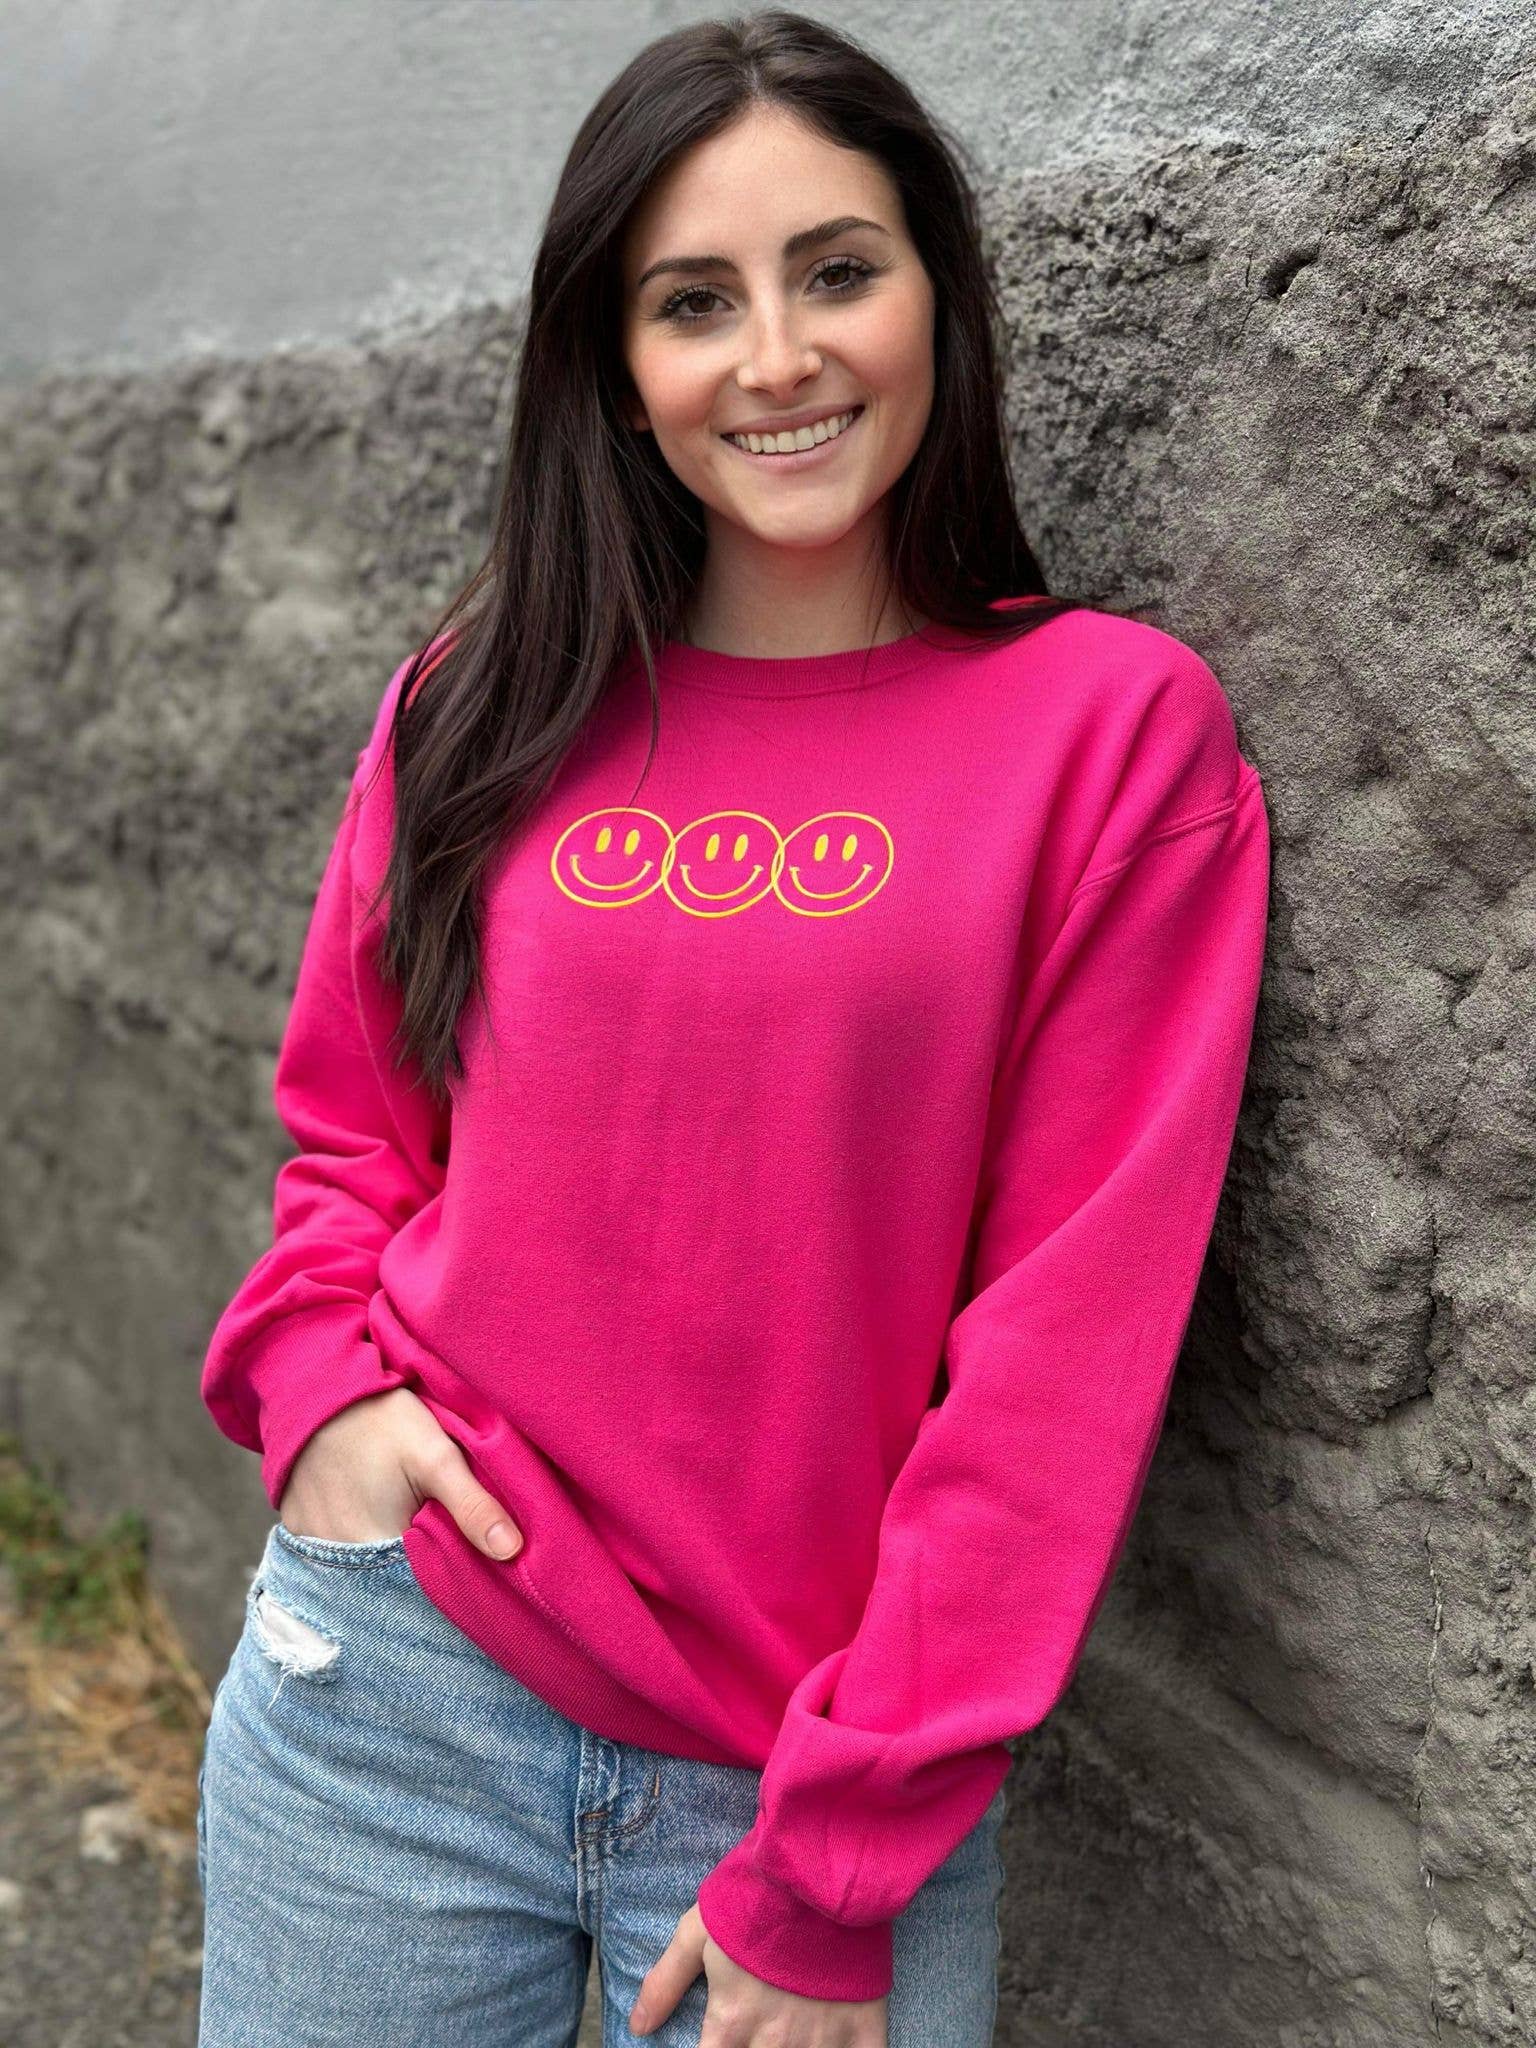 Positive Pink Sweatshirt